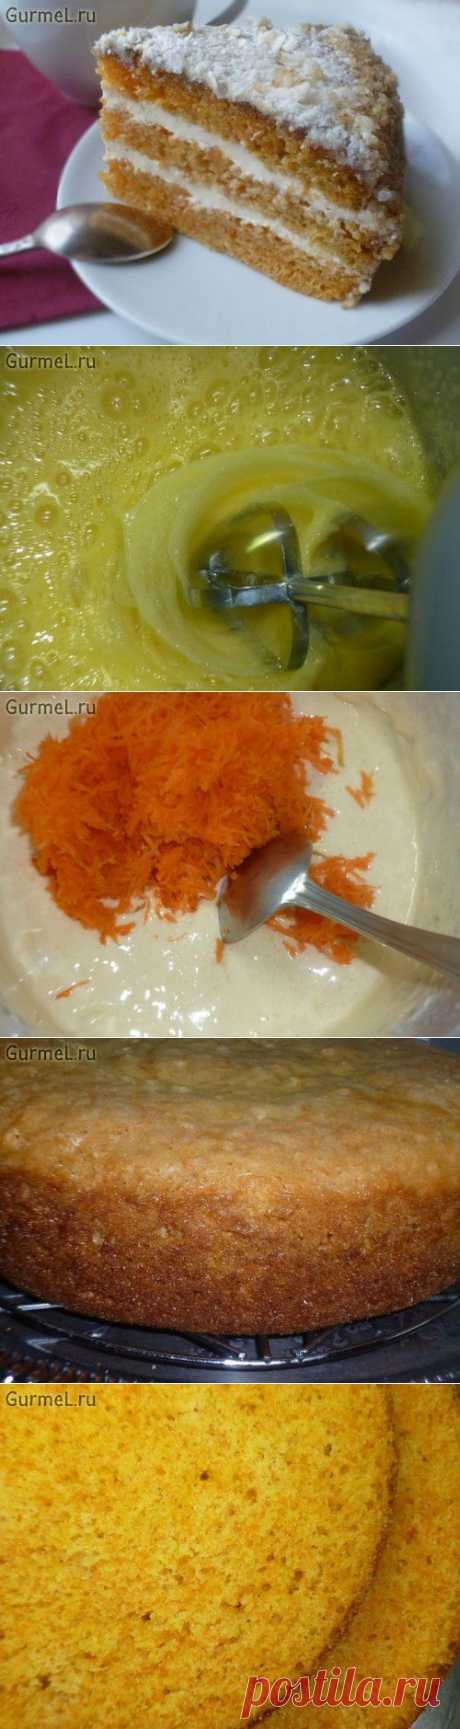 Морковный торт (низкокалорийный). Рецепт с фото. Пошаговые фотографии. GurmeL